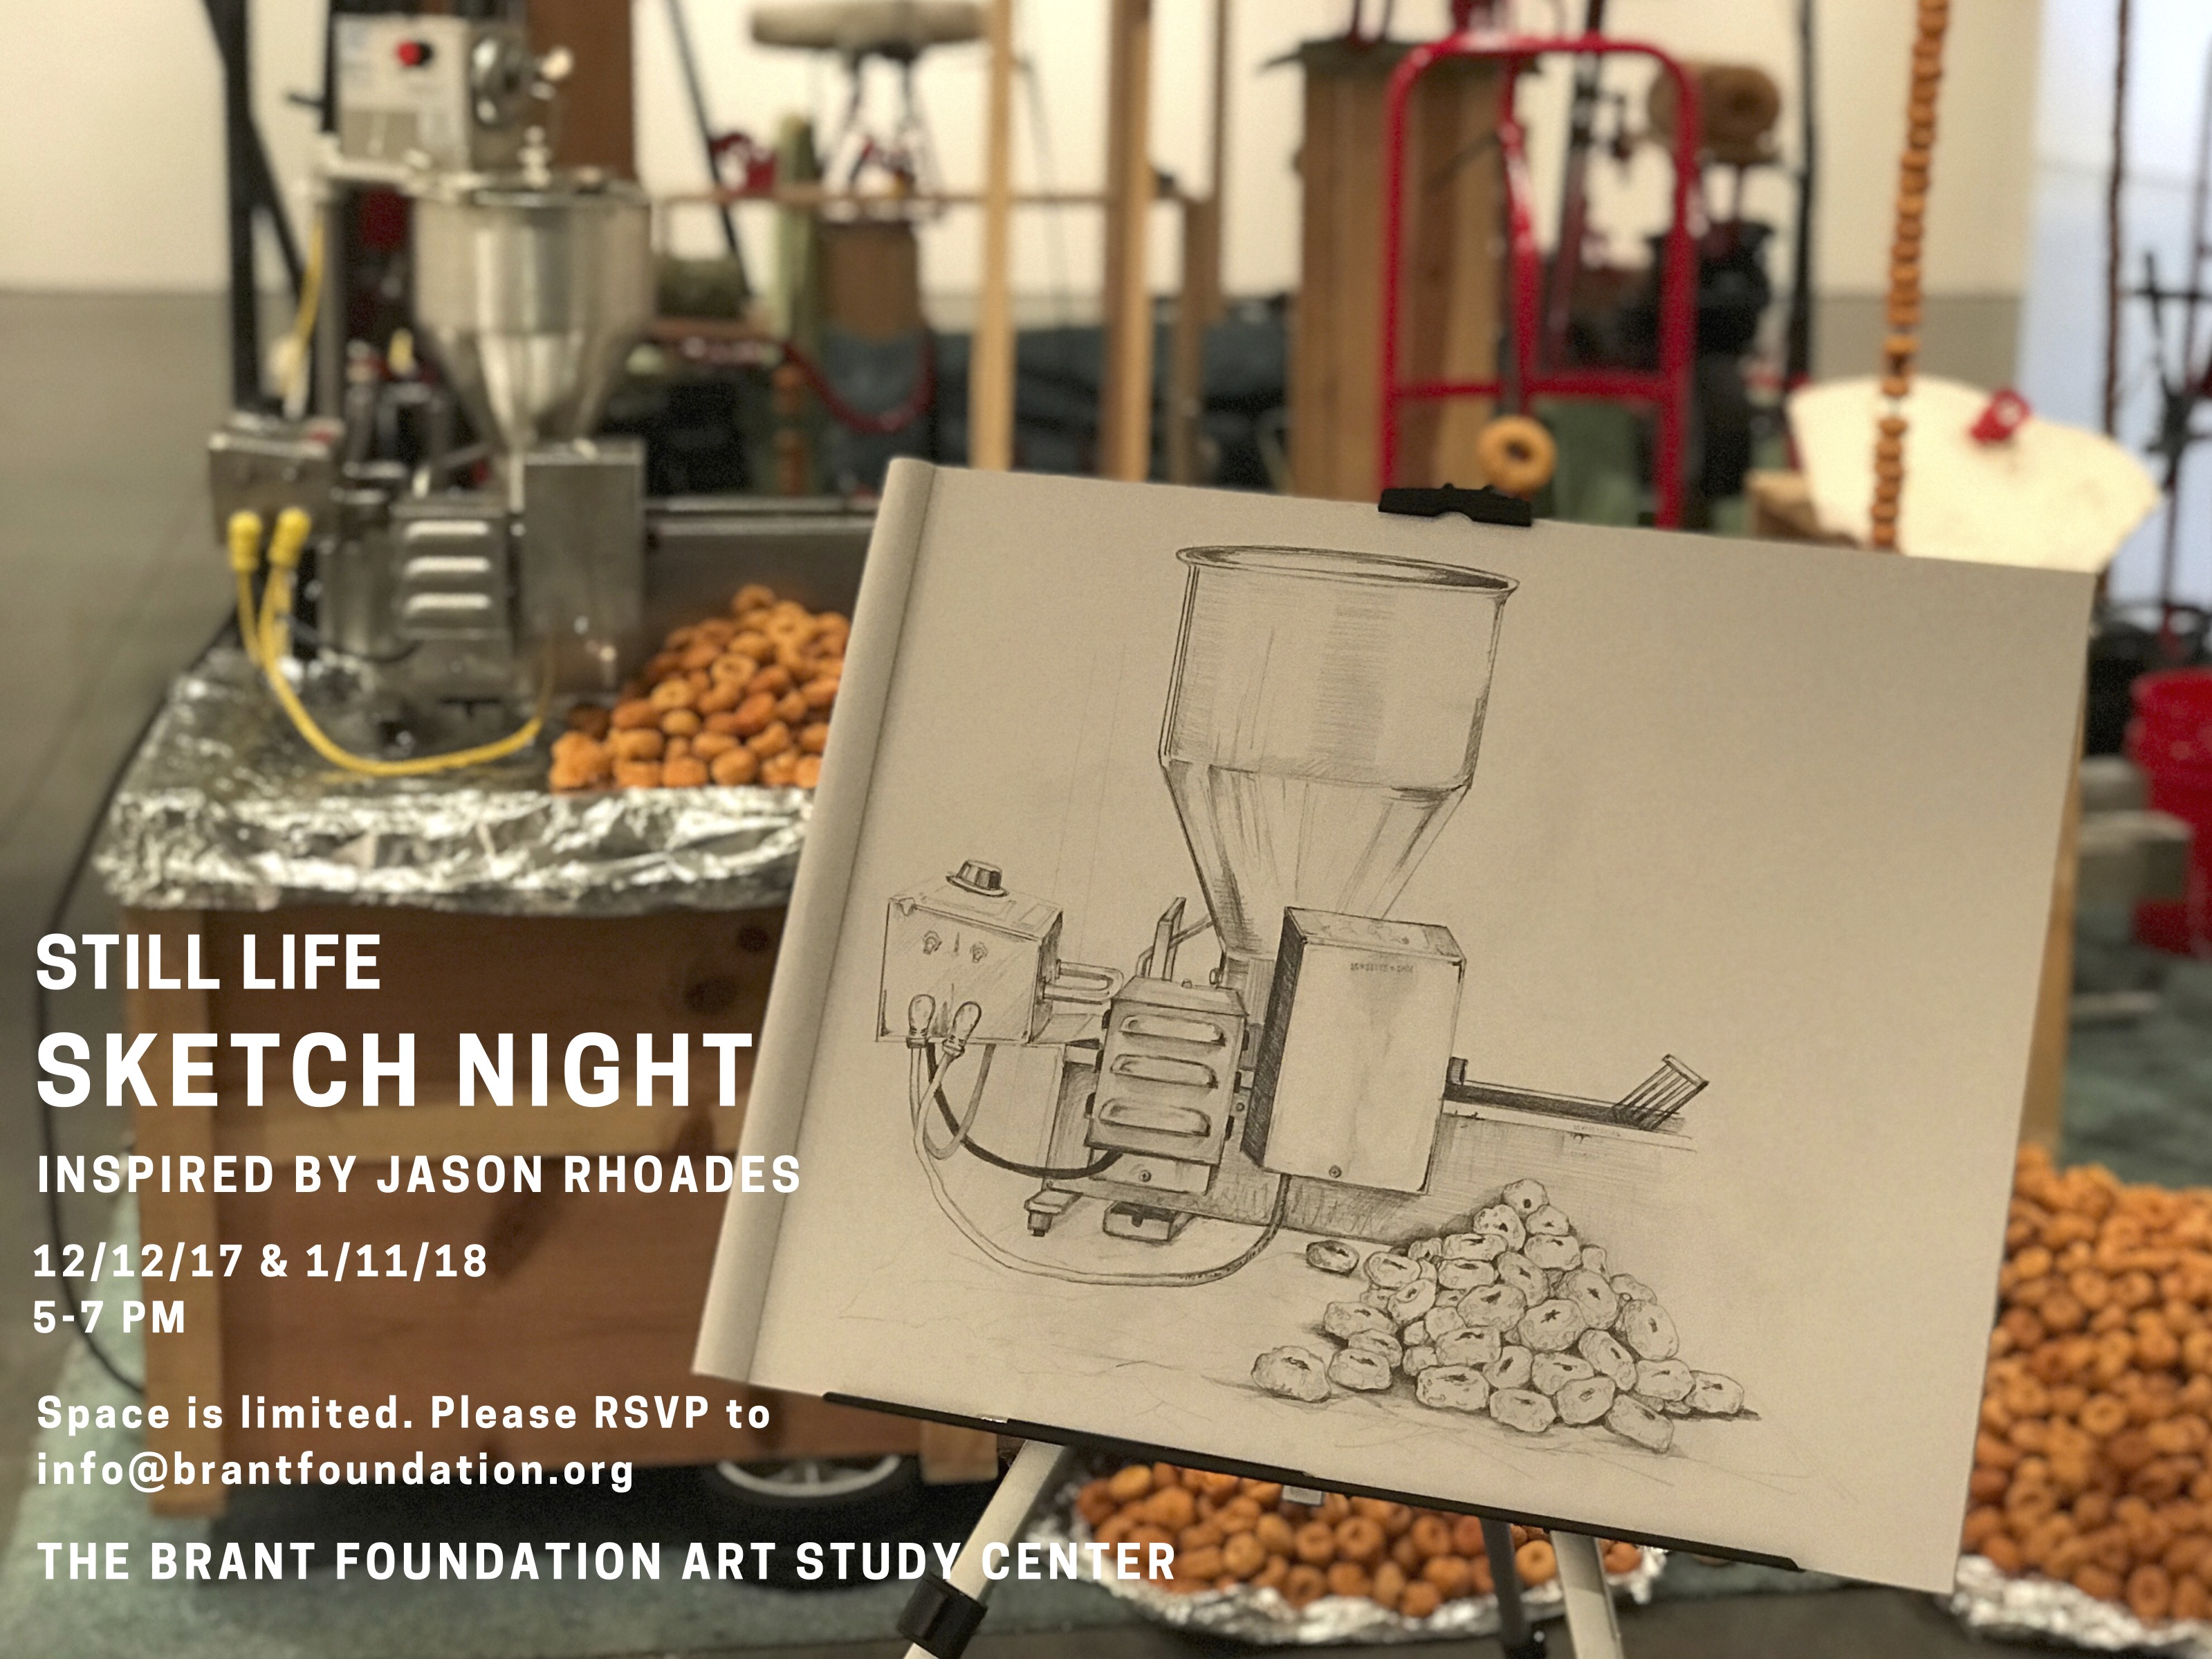 Sketch Night - Still Life at The Brant Foundation.